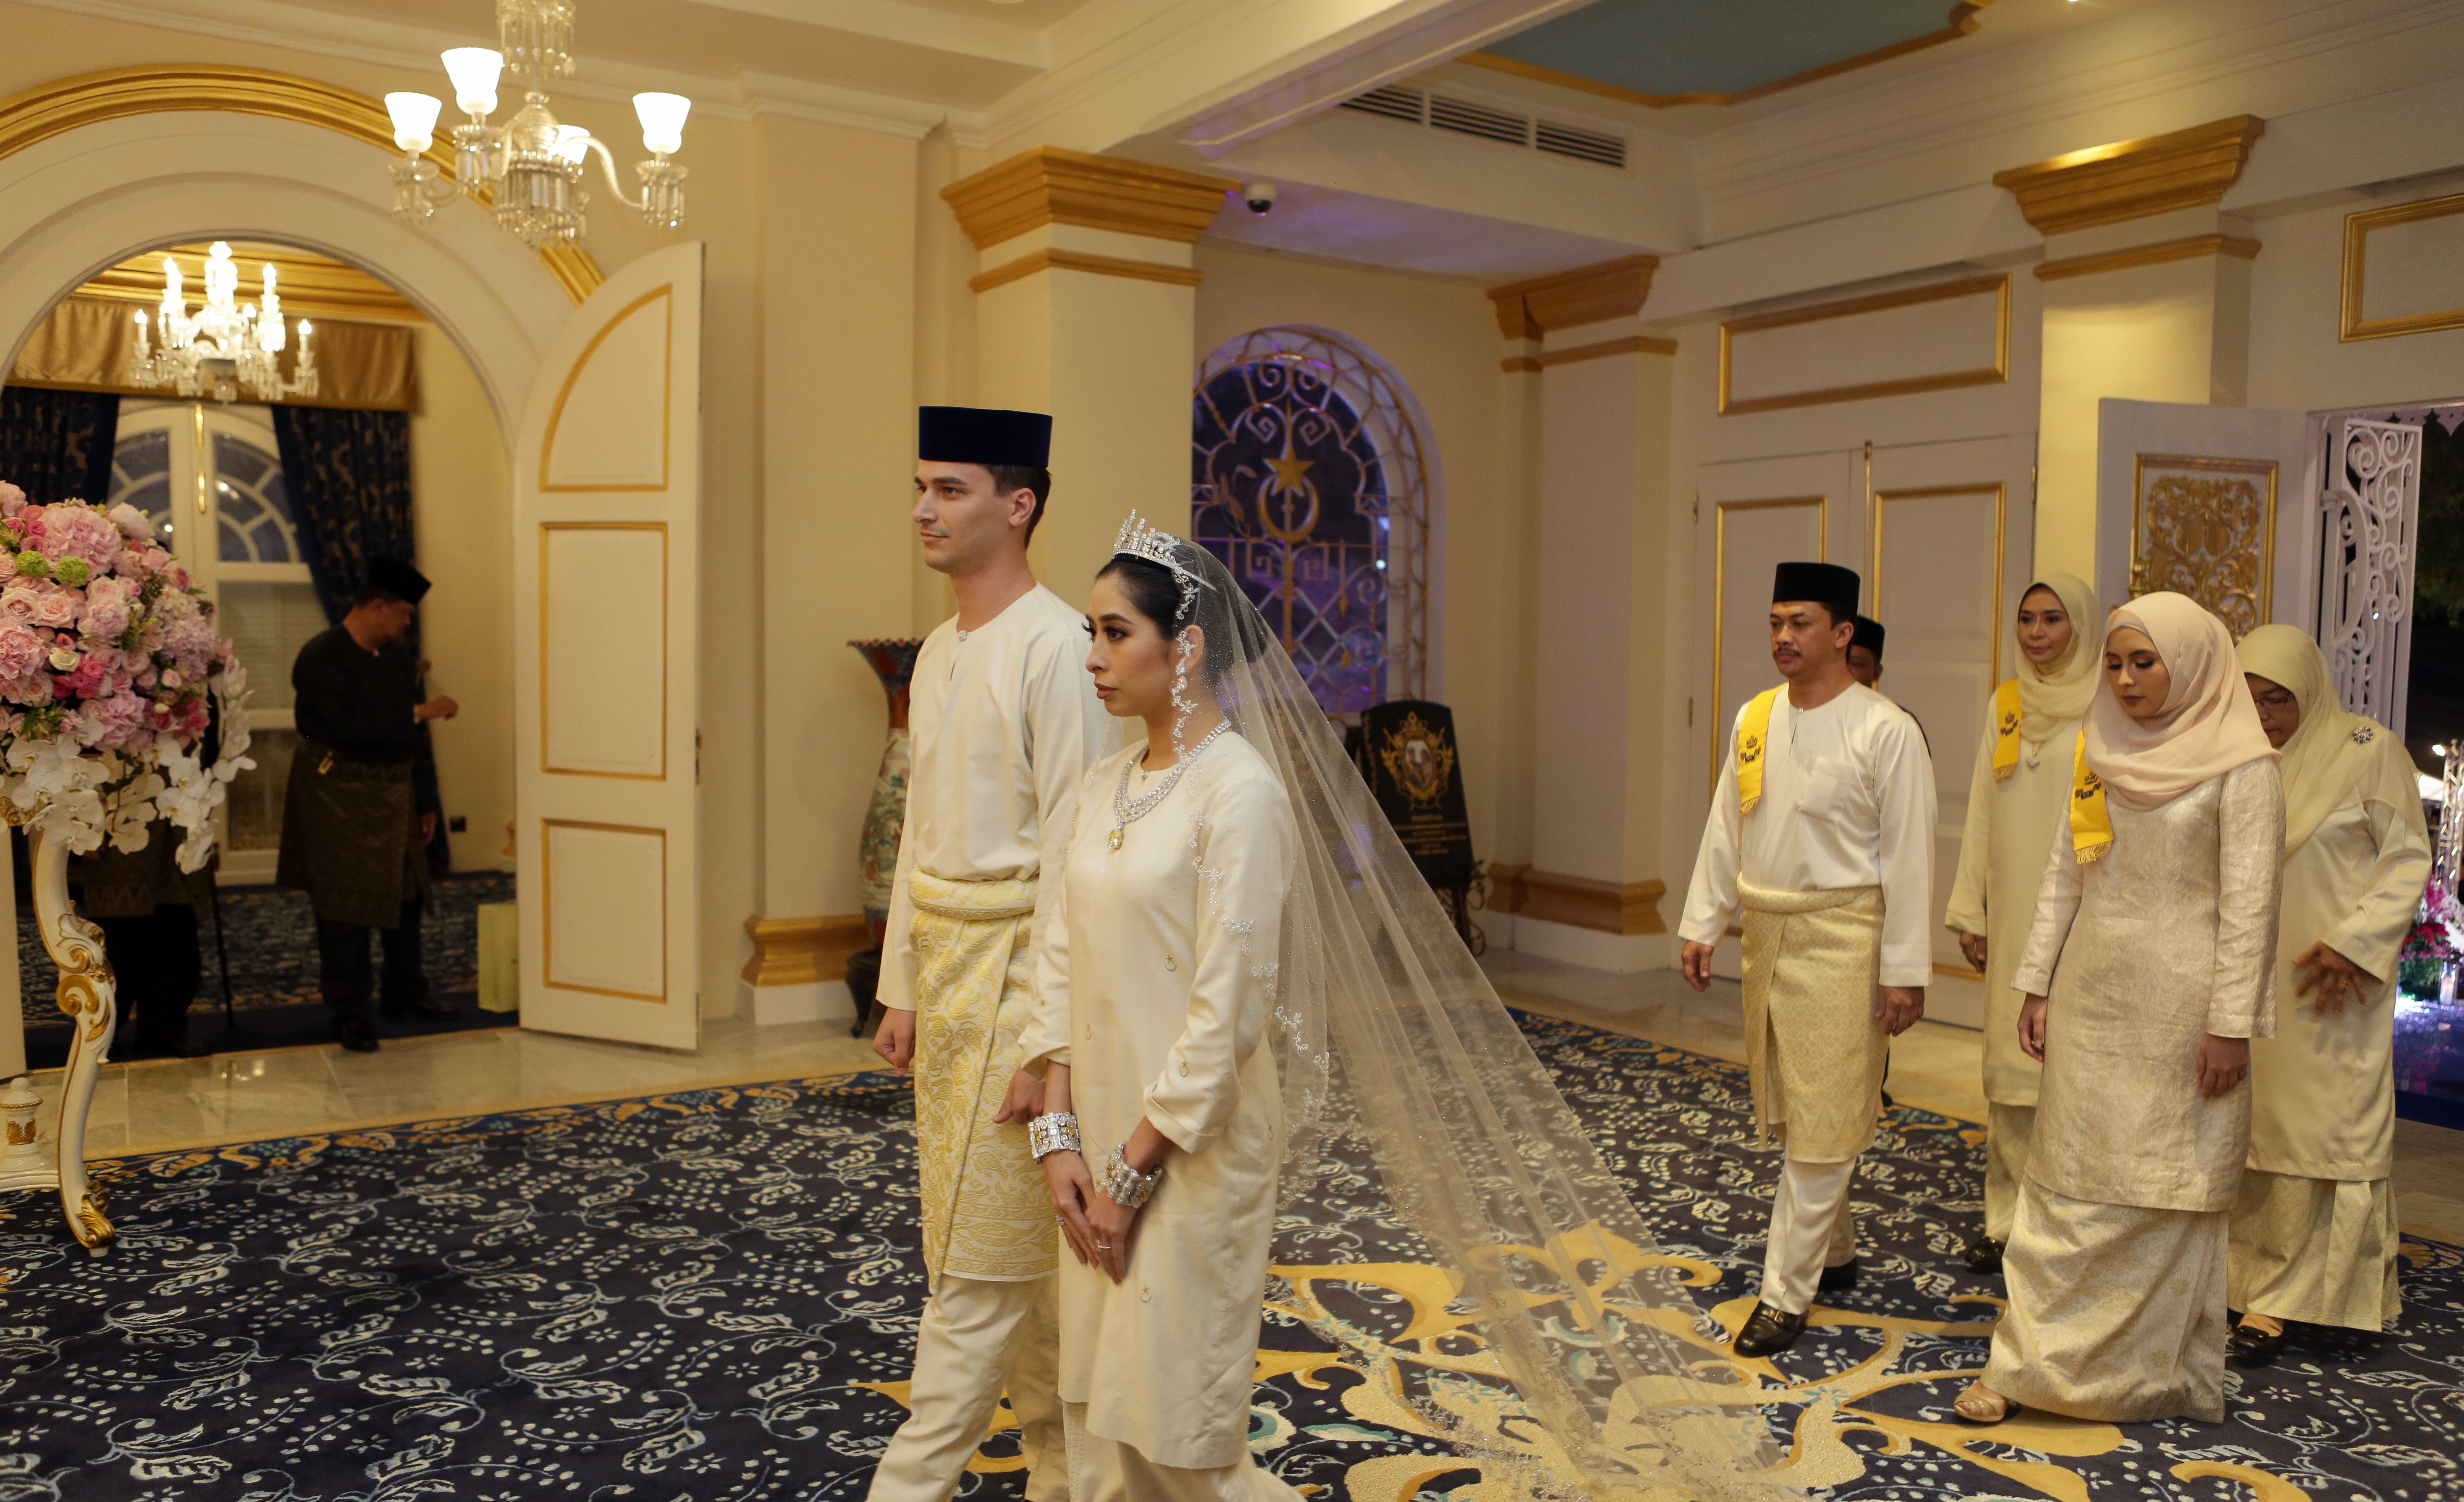 Малайзийската принцеса Тунку Амина  и  Денис Мохамад Абдула - холандец, приел исляма - се венчаха на пищна церемония в  град Джохор Бахру, Малайзия. На сватбата, която се провела в двореца Серене хил, присъстваха над 1200 члена на аристократичното семейство. Тълпите пък гледаха пищната церемония на големи екрани на градския площад в Джохор Бахру.